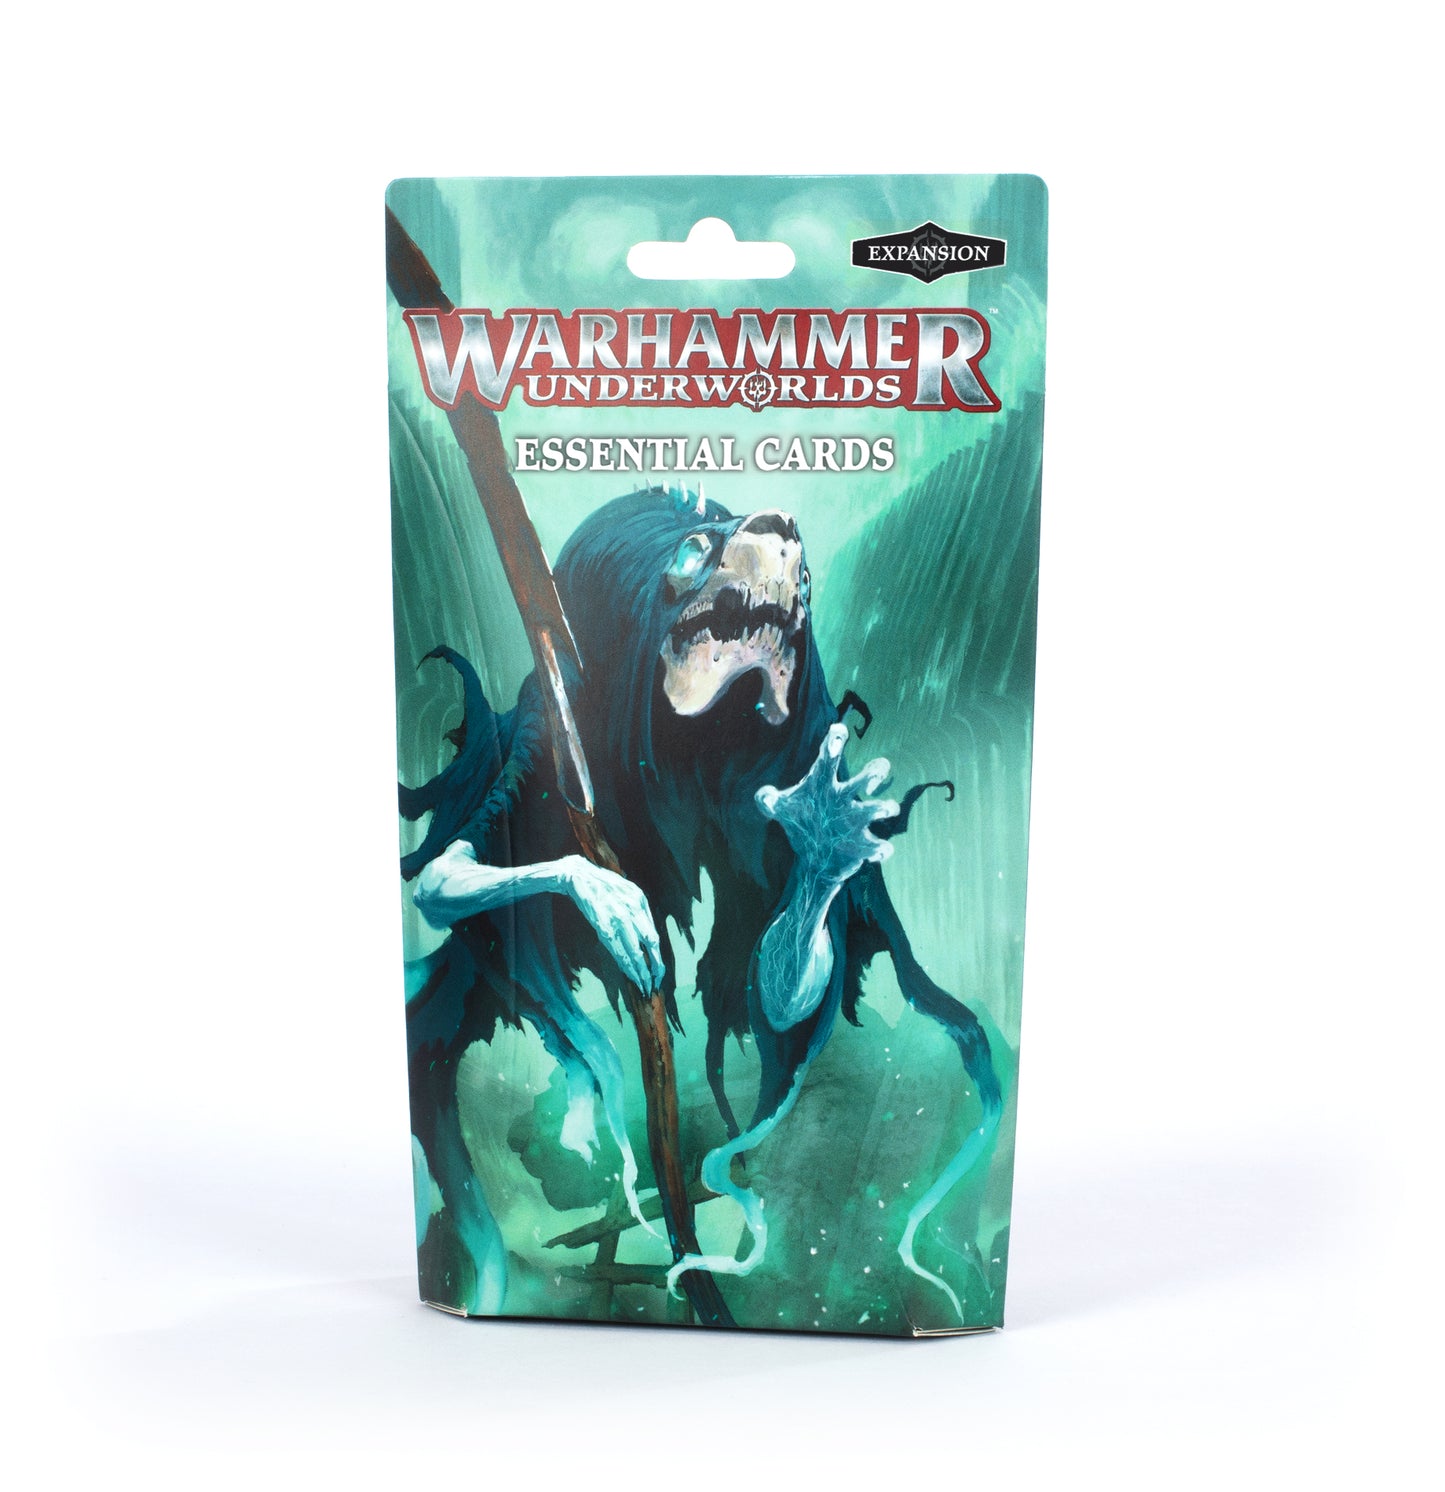 Warhammer Underworlds Essential Cards (English)